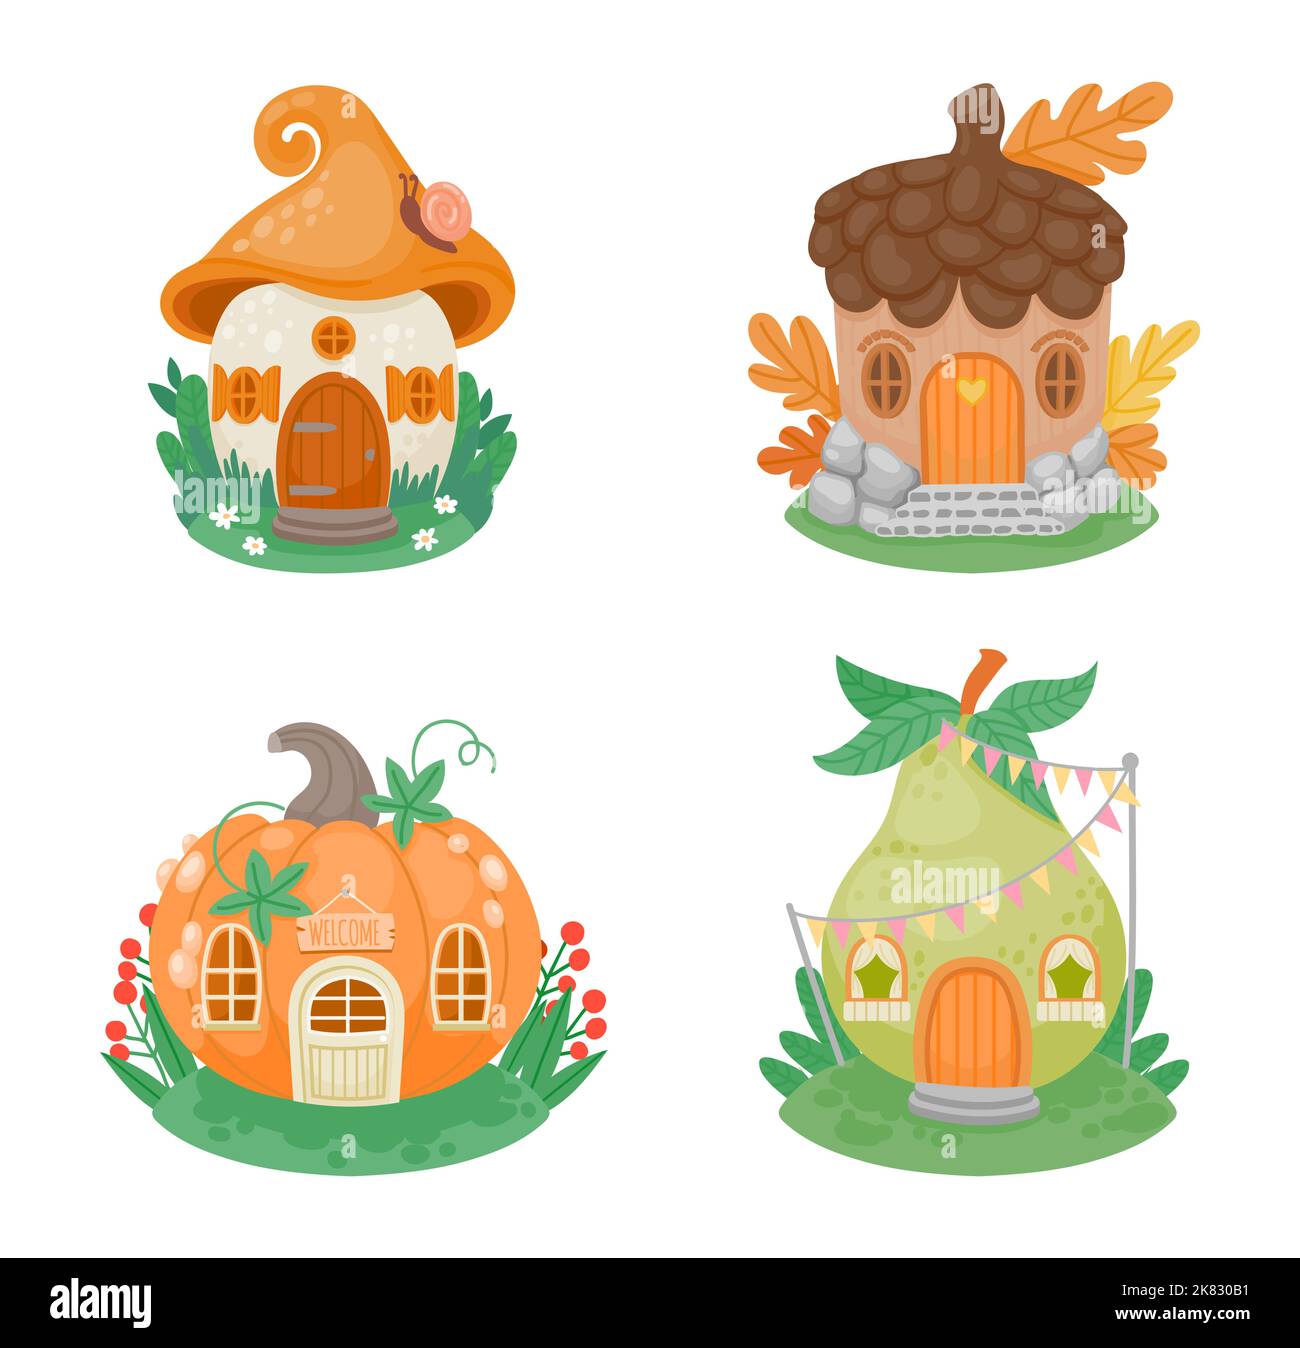 Maisons de petite fantaisie de dessin animé. De jolis petits bâtiments de gnome en forme de champignon, de citrouille, de poire et d'corne sur une pelouse verte Illustration de Vecteur